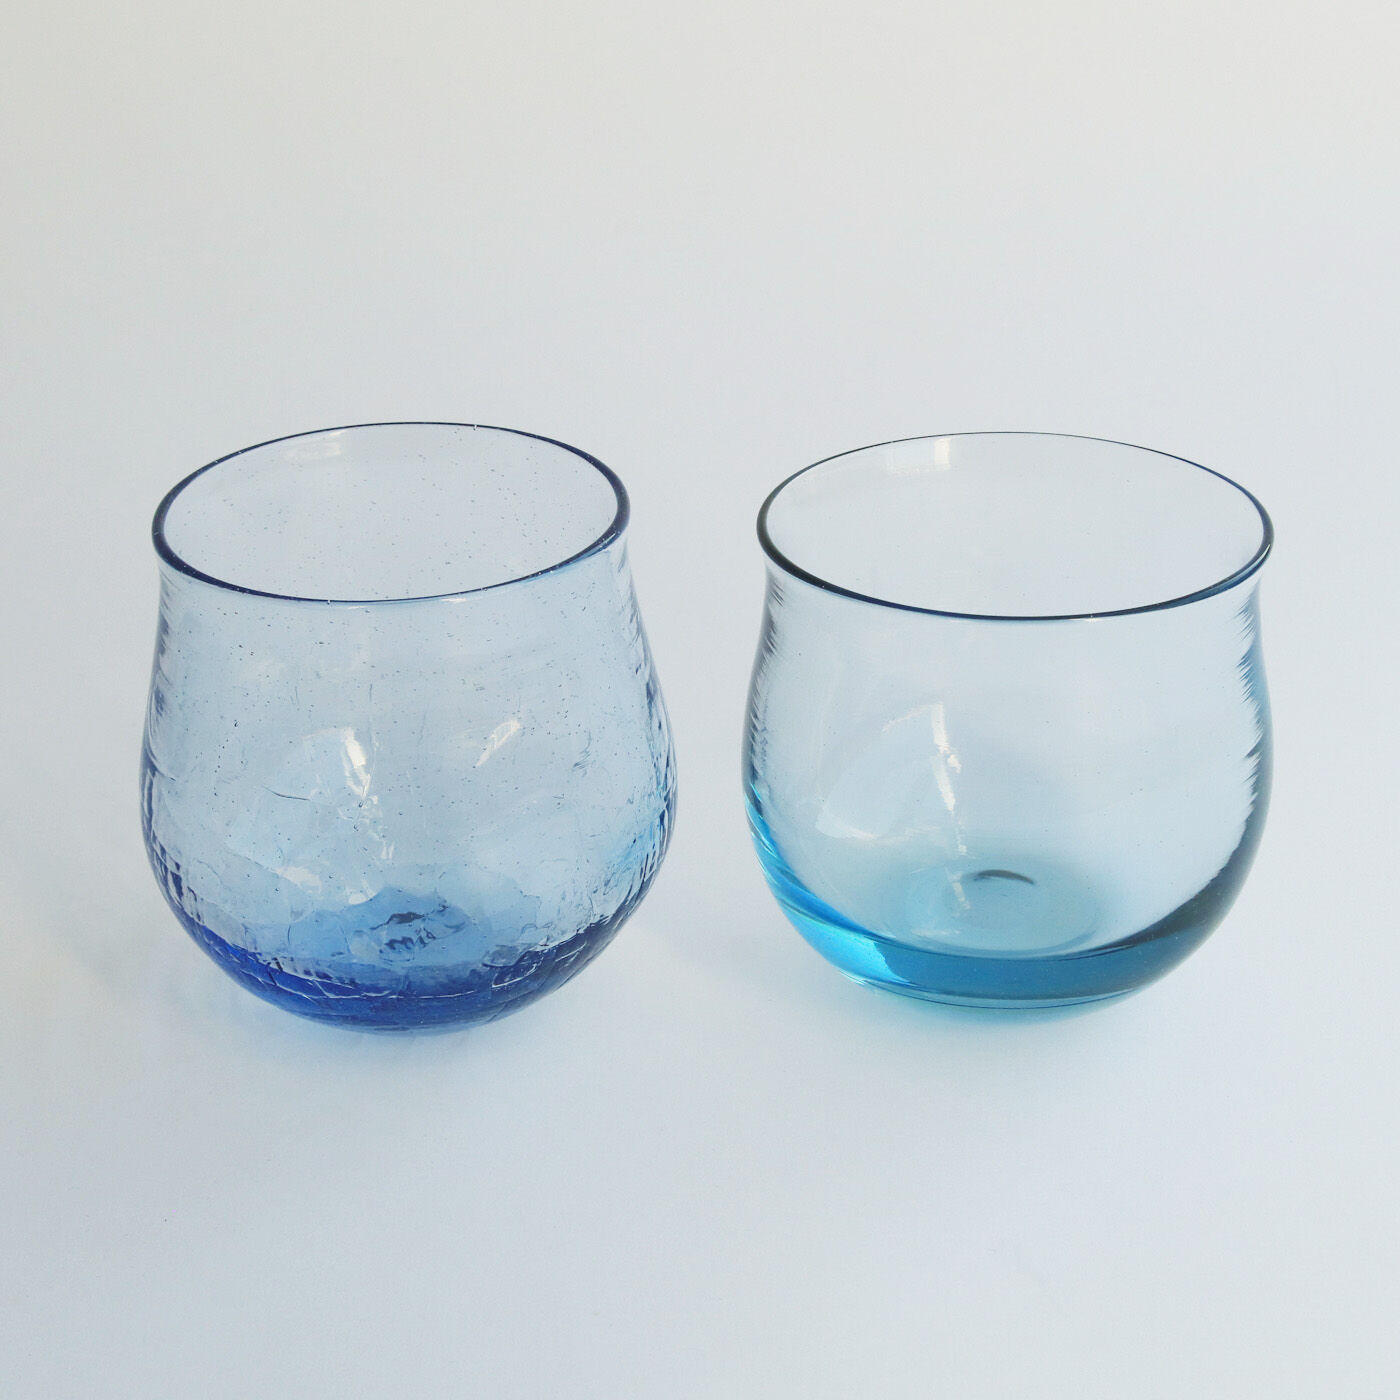 ＆Stories|小田原のガラス職人が作った 海と空が溶け込んだ宙吹きグラス〈2個セット〉|こちらもお届けの一例です。